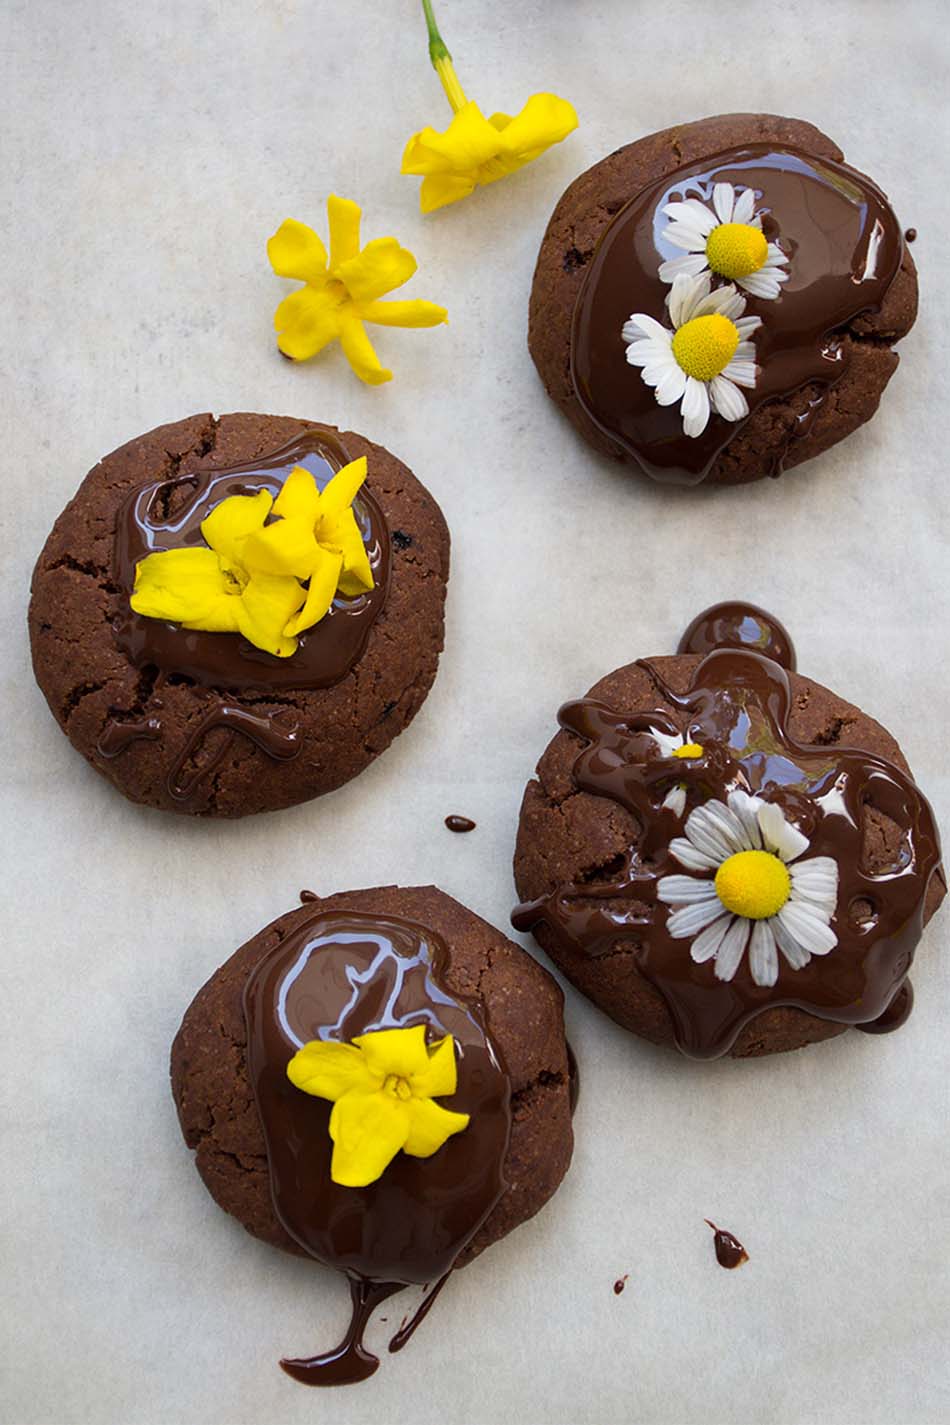 Vegan Chocolate Cookies With Edible Flowers